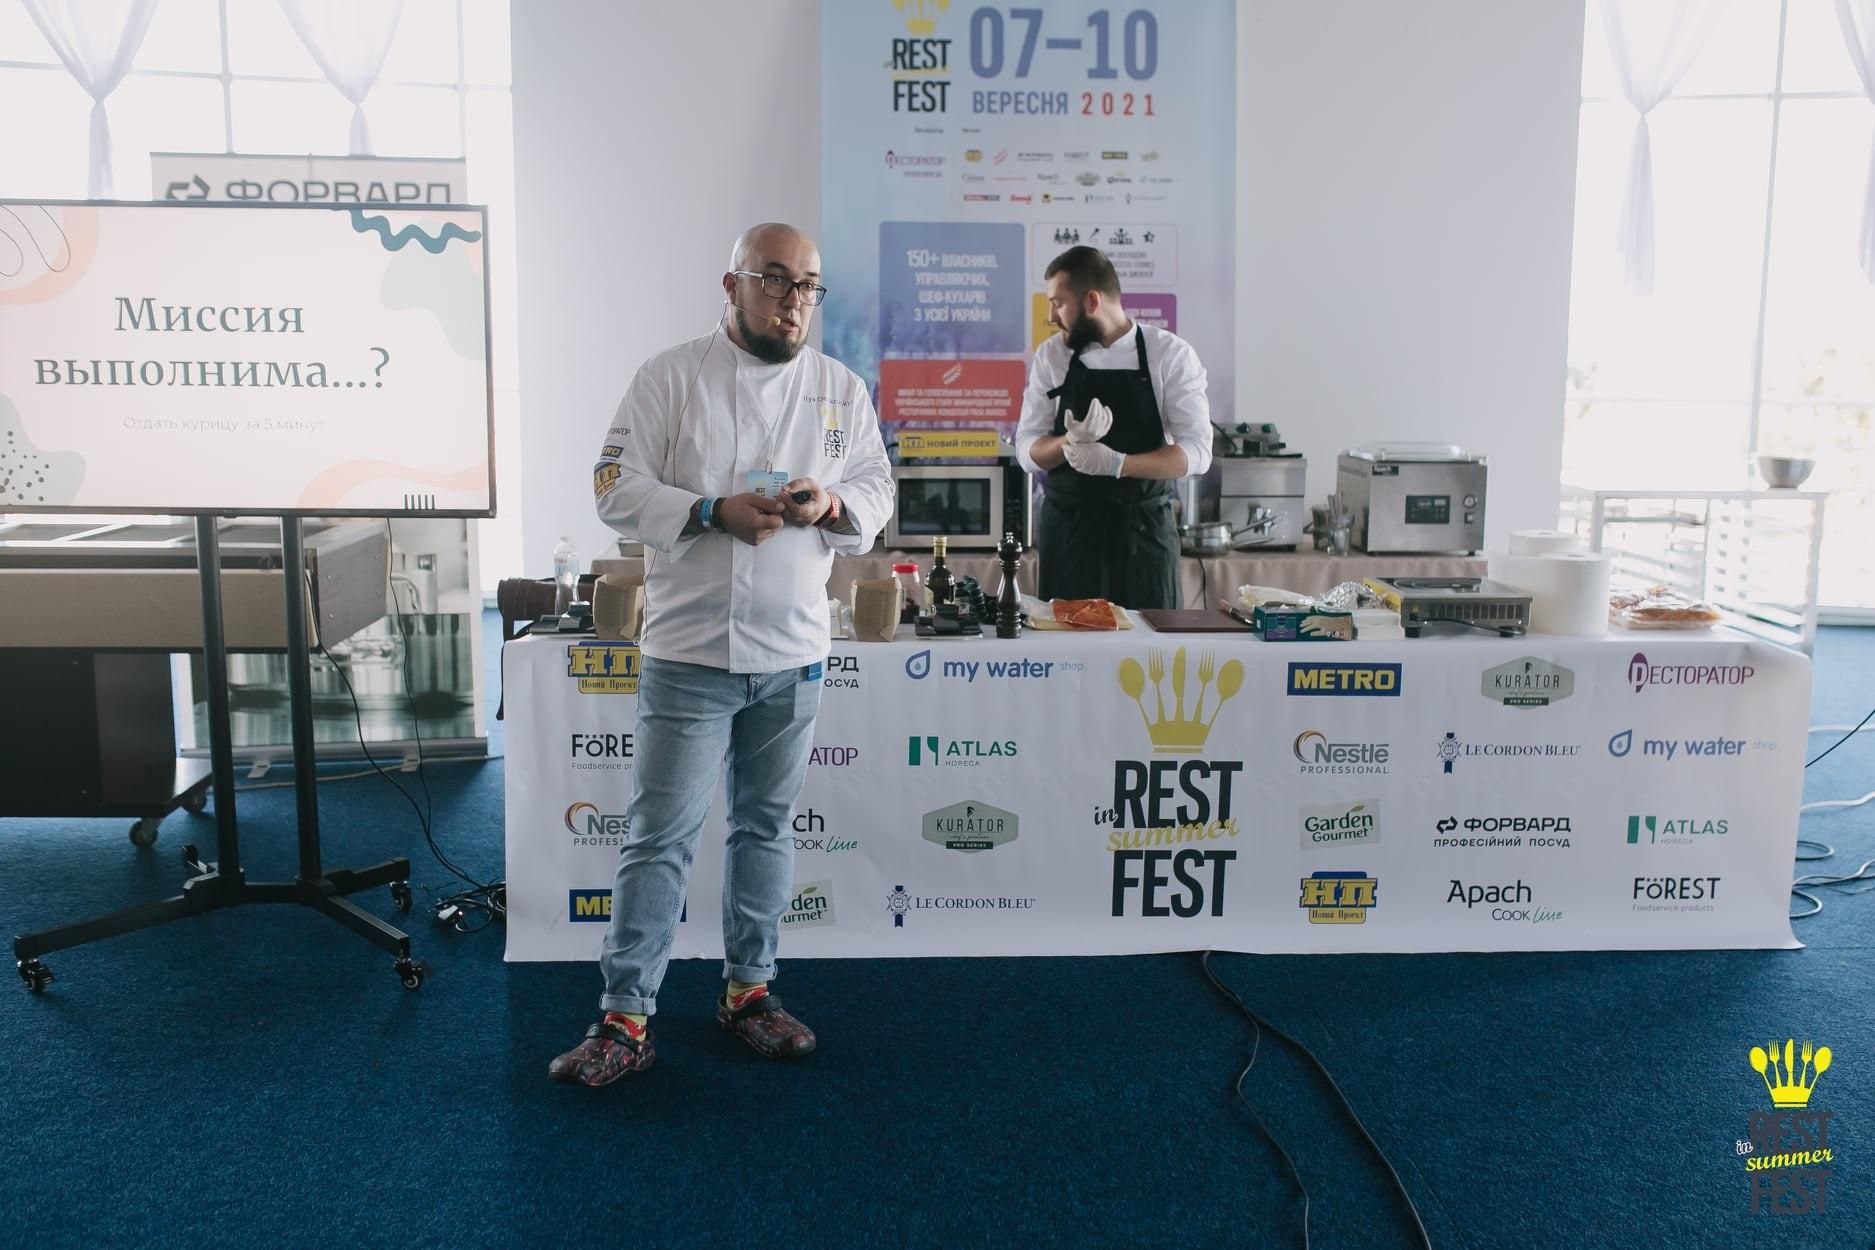 Недавно завершился фестиваль "InRestFest'2021" при поддержке ТМ "KURATOR": чем он запомнился - Новости Вкусно